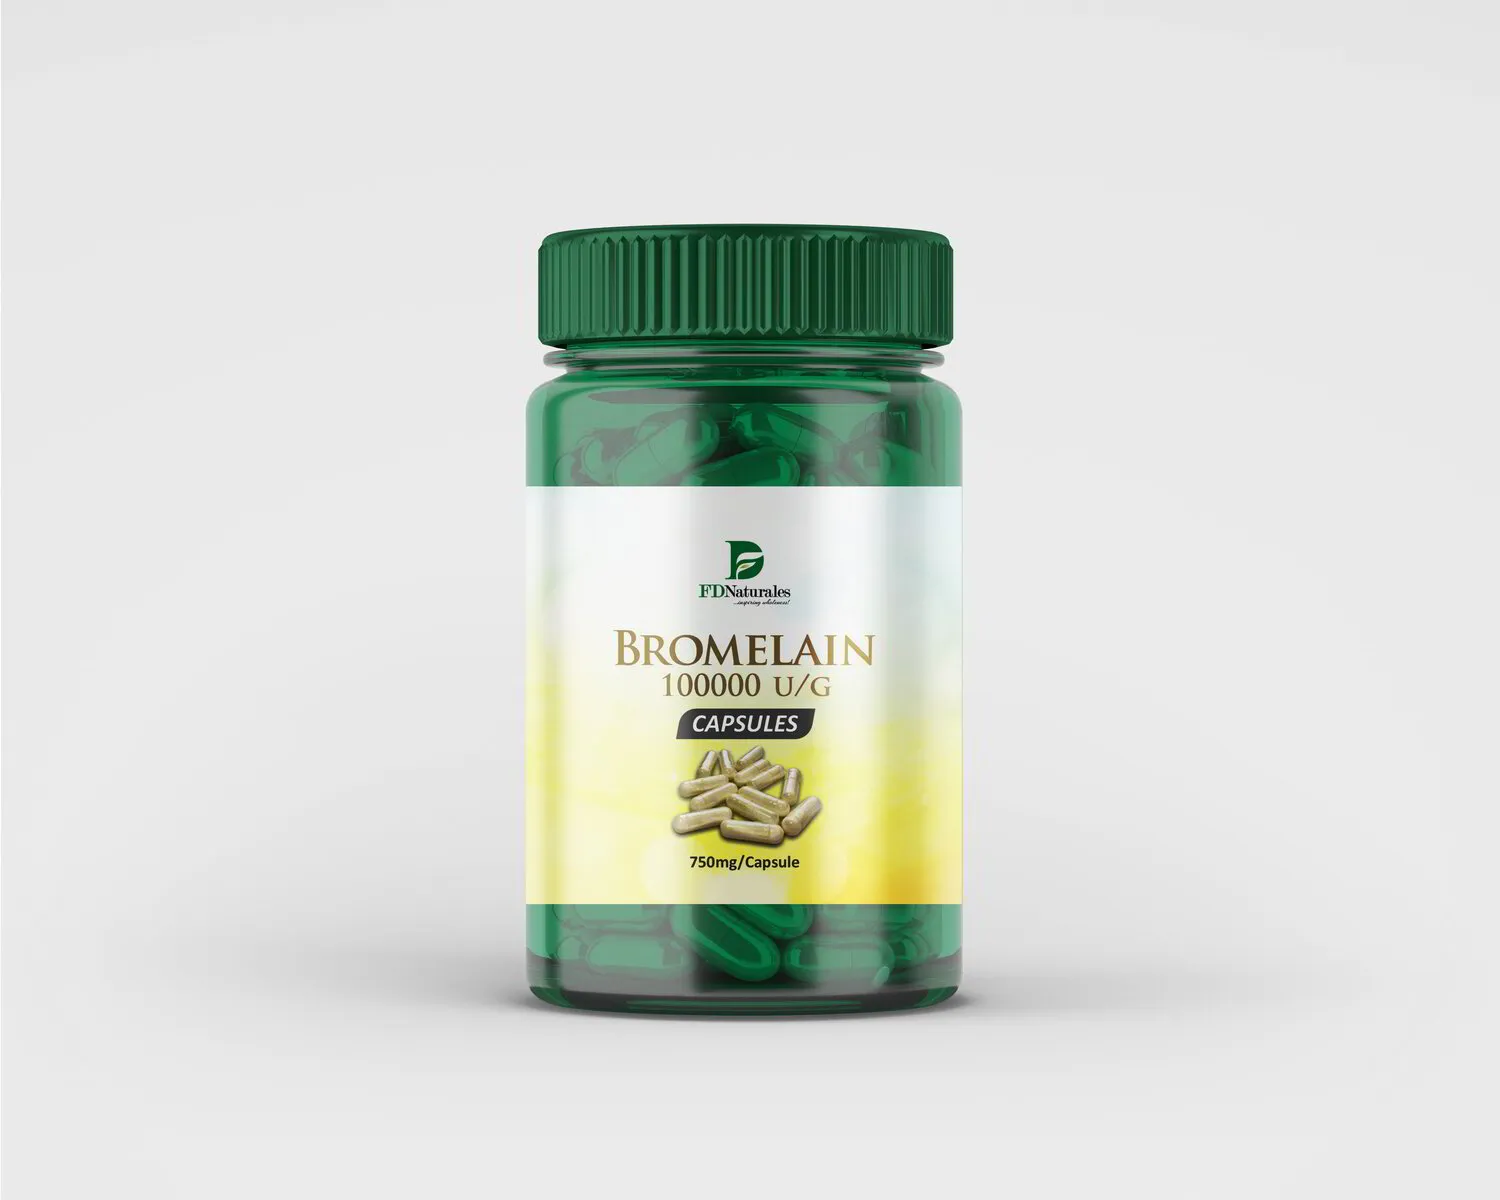 Bromelain Enzyme